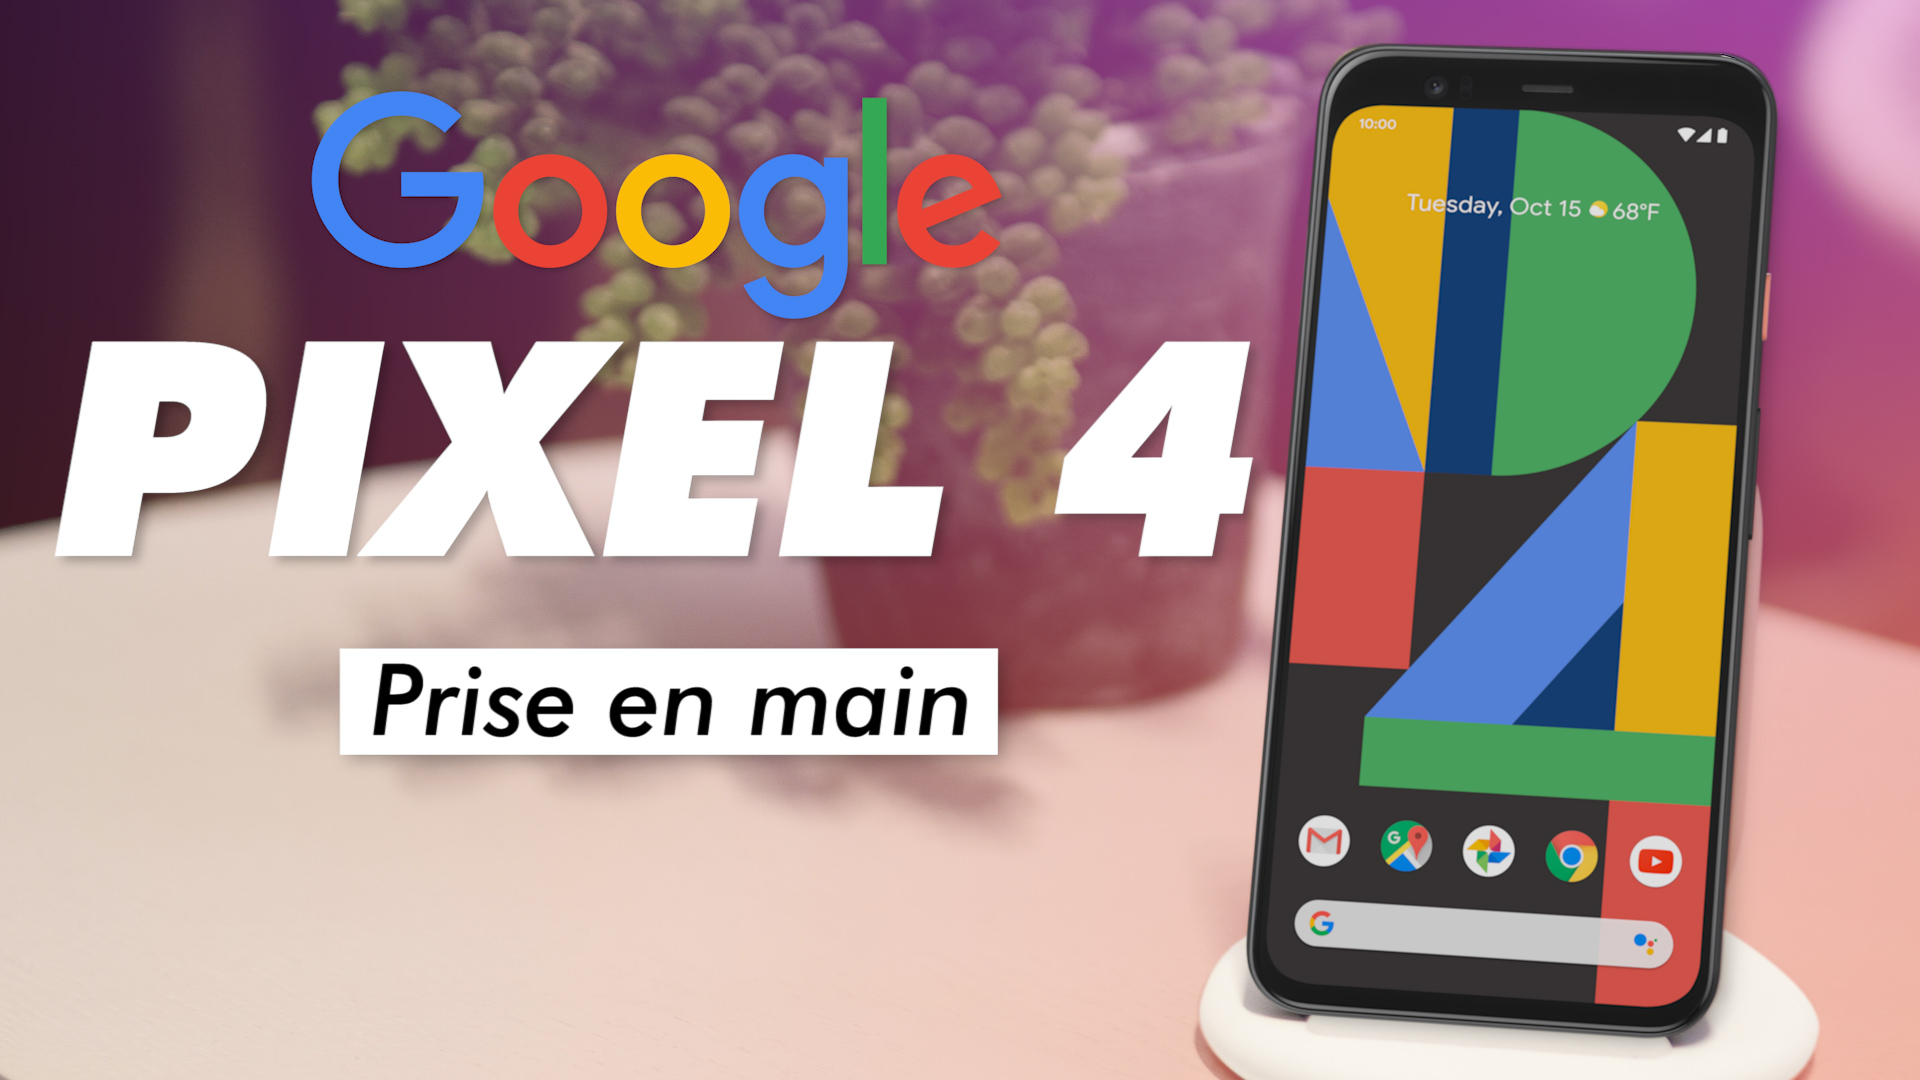 Google Pixel 4 : nous a-t-il SURPRIS pendant la PRISE EN MAIN ?